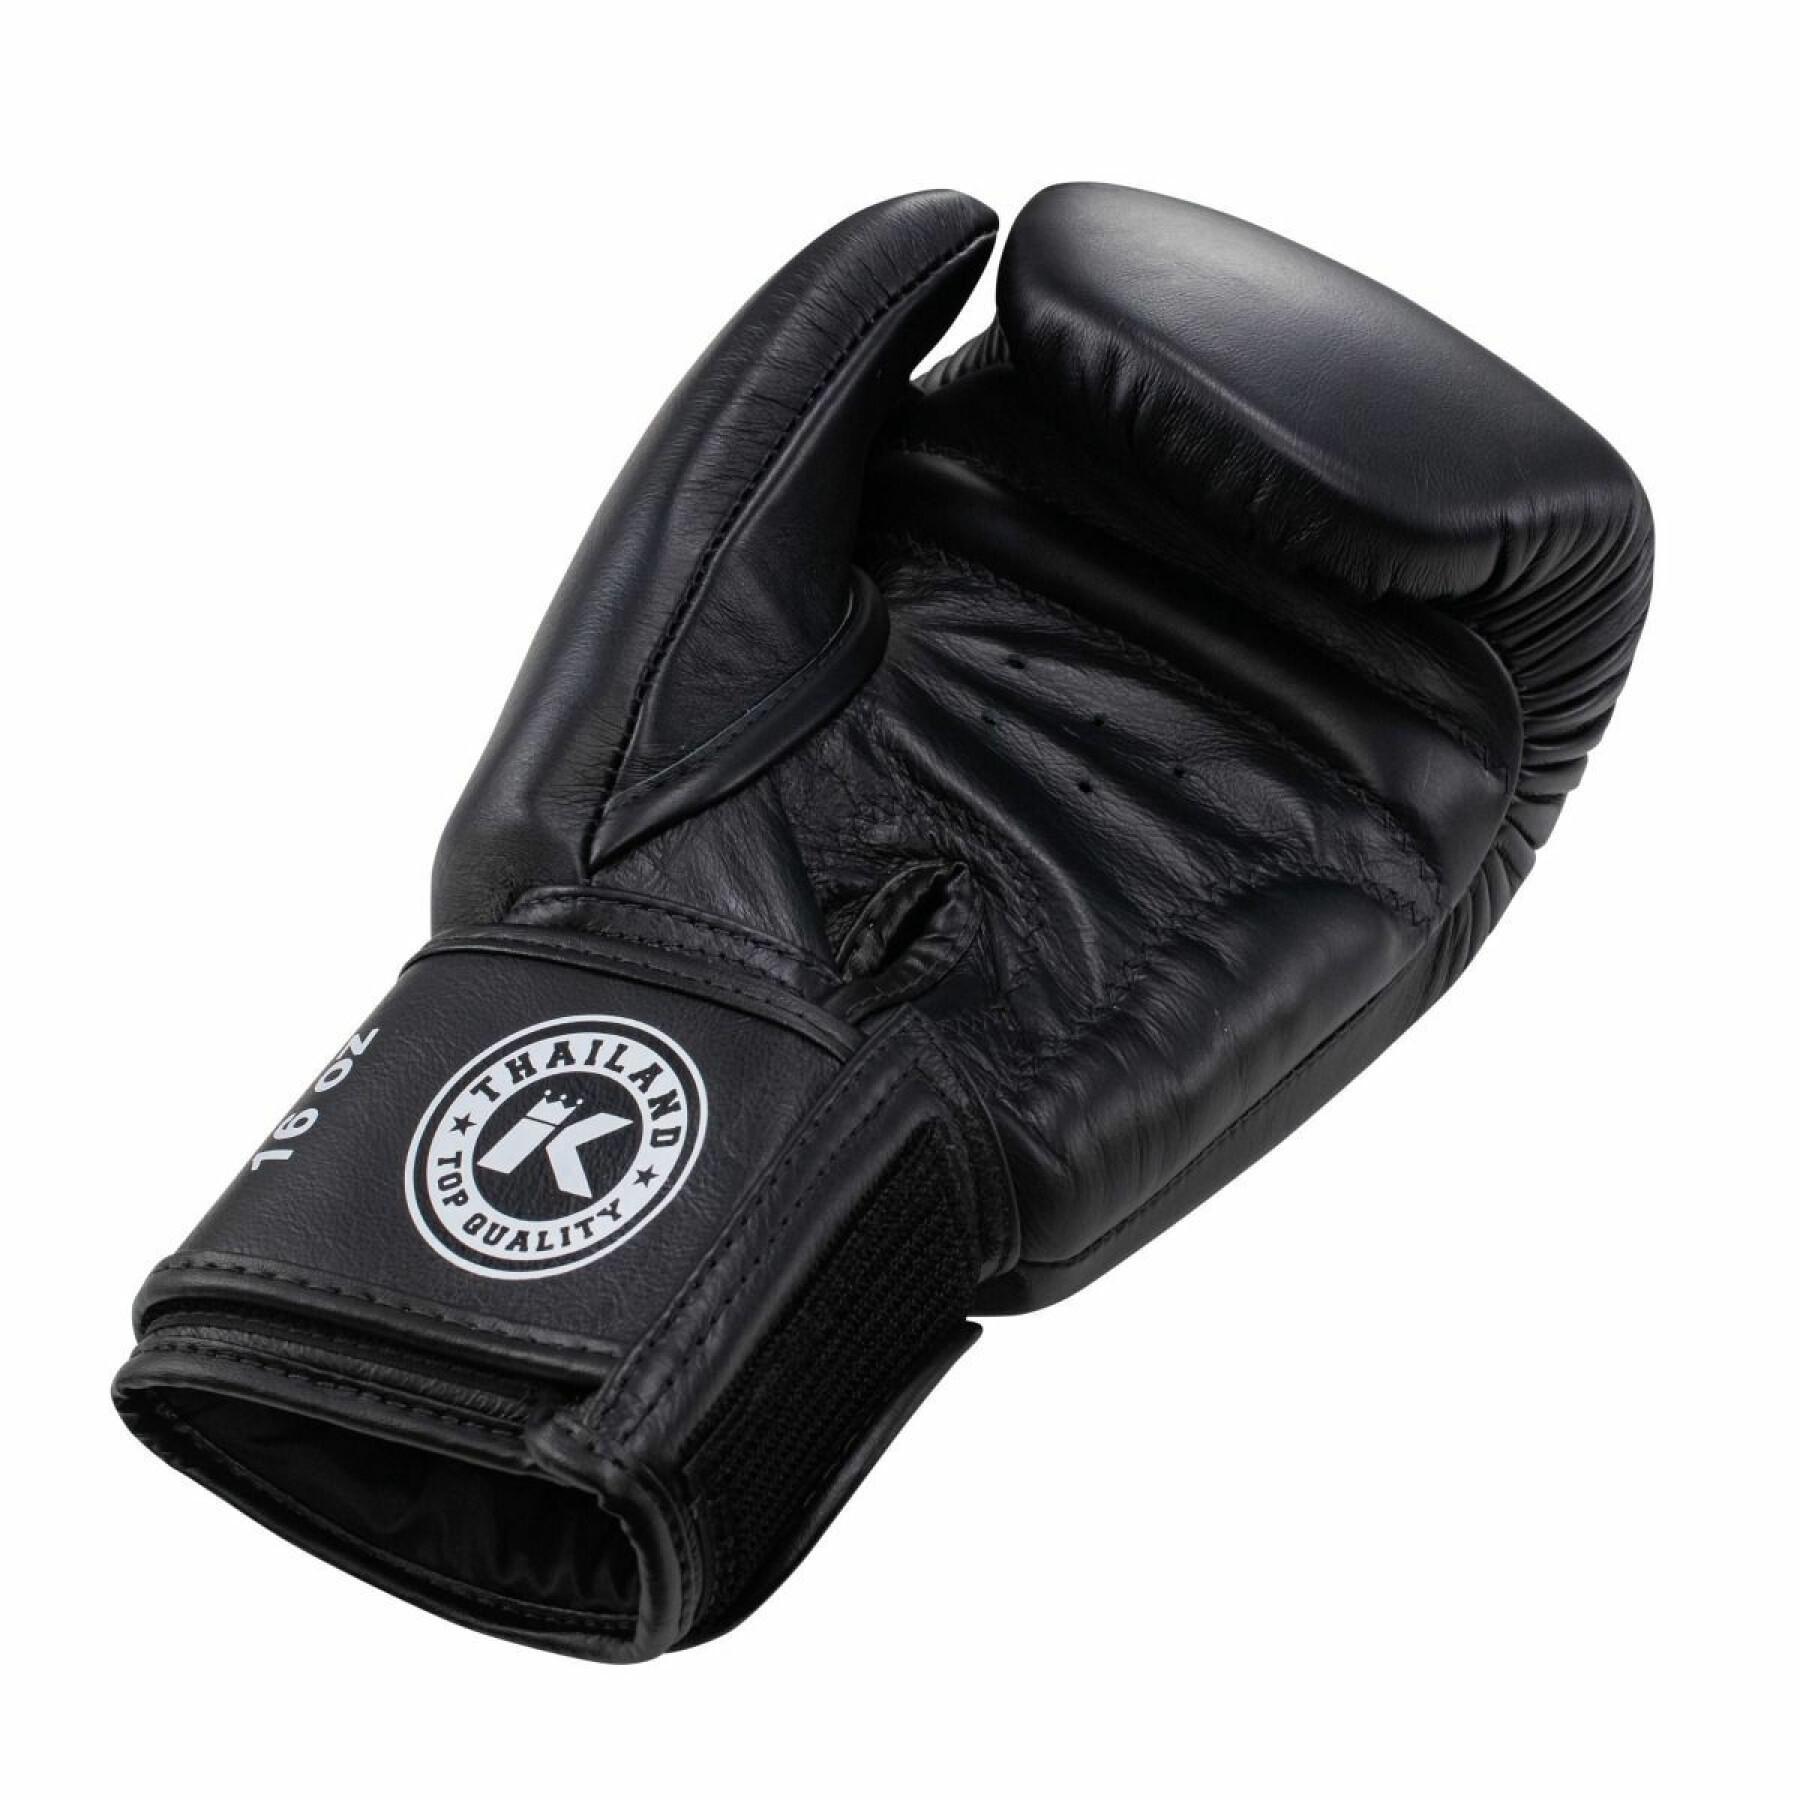 Boxing gloves King Pro Boxing Kpb/Bgvl 3